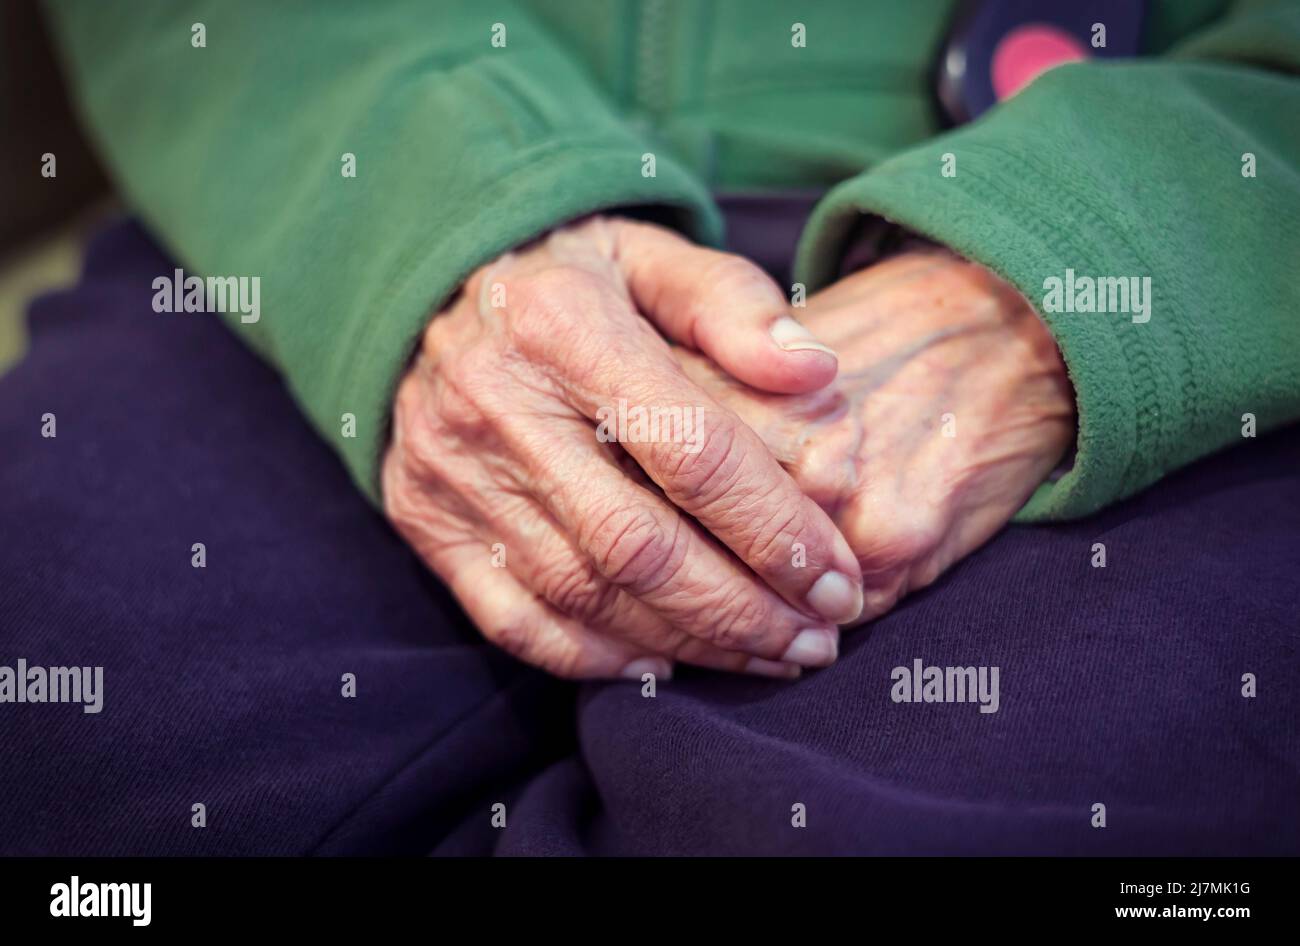 Primo piano delle mani di una vecchia donna indiana asiatica con la pelle rugosa. Descrive i concetti di solitudine, preoccupazione, demenza e salute mentale. Foto Stock